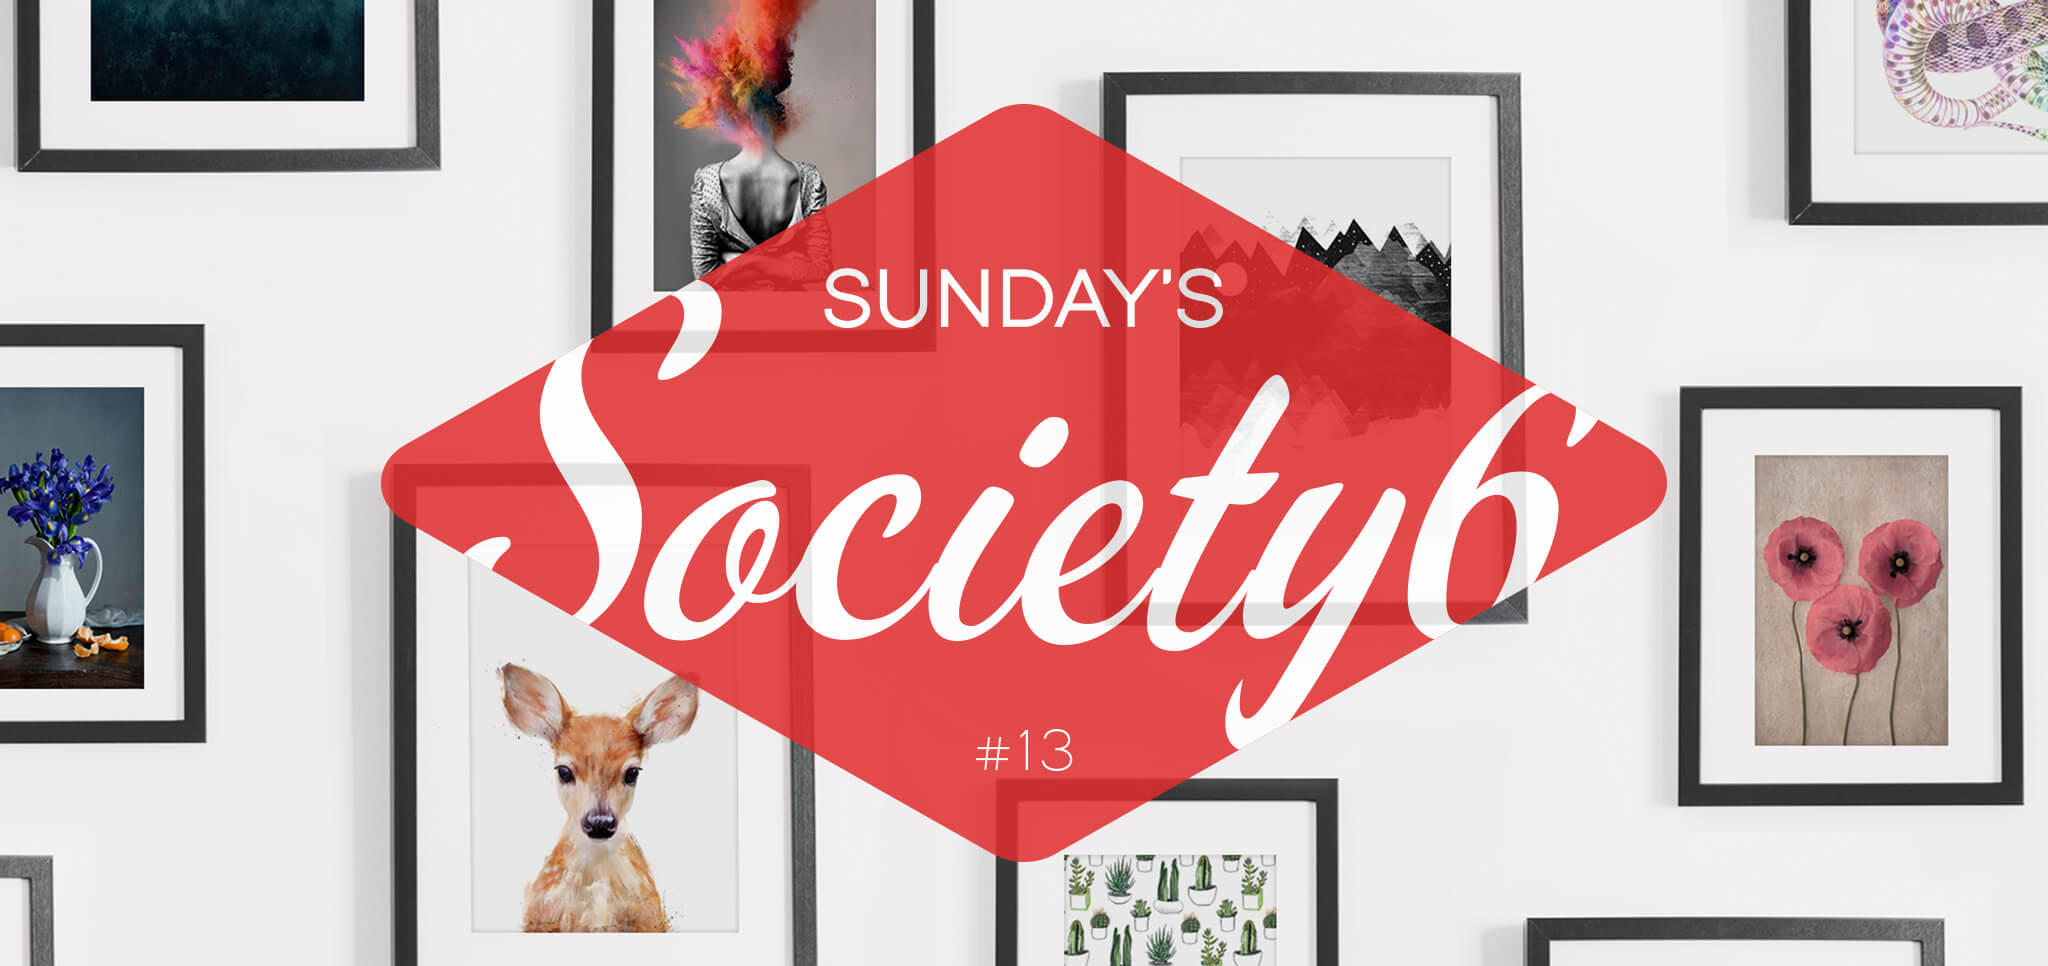 Sunday’s Society6 – #13